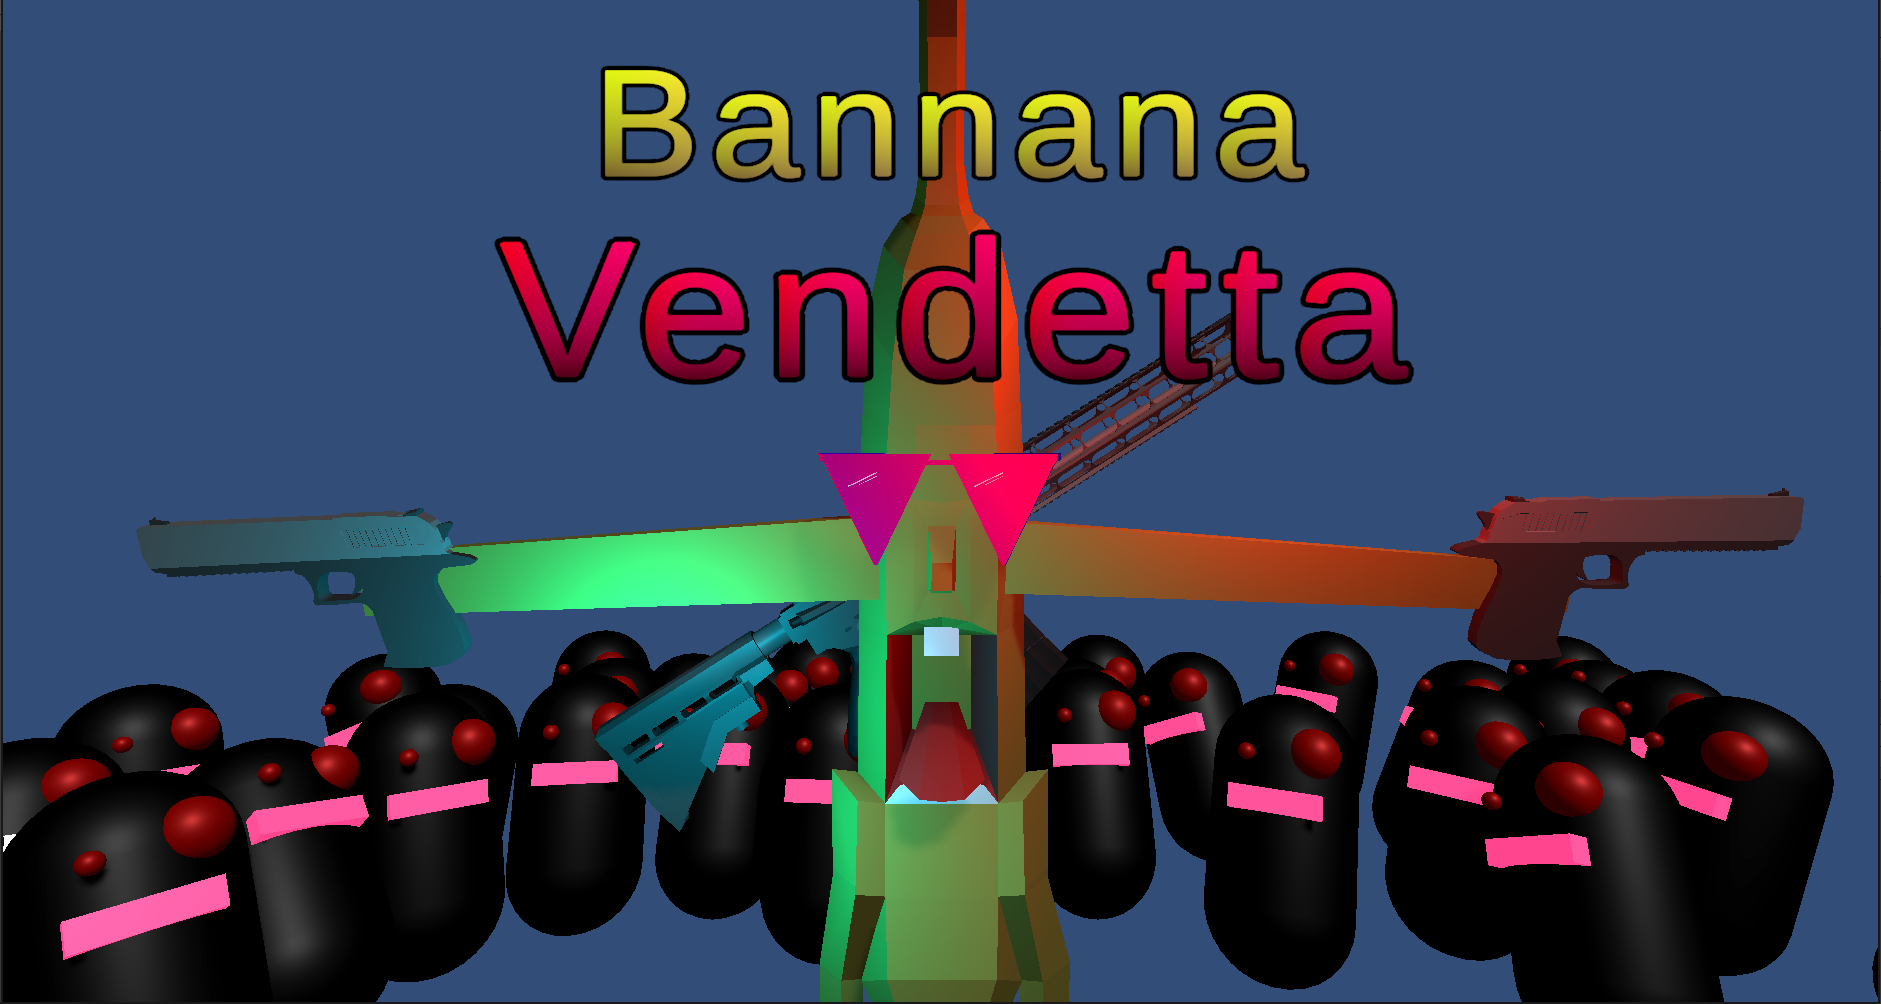 Banana Vendetta